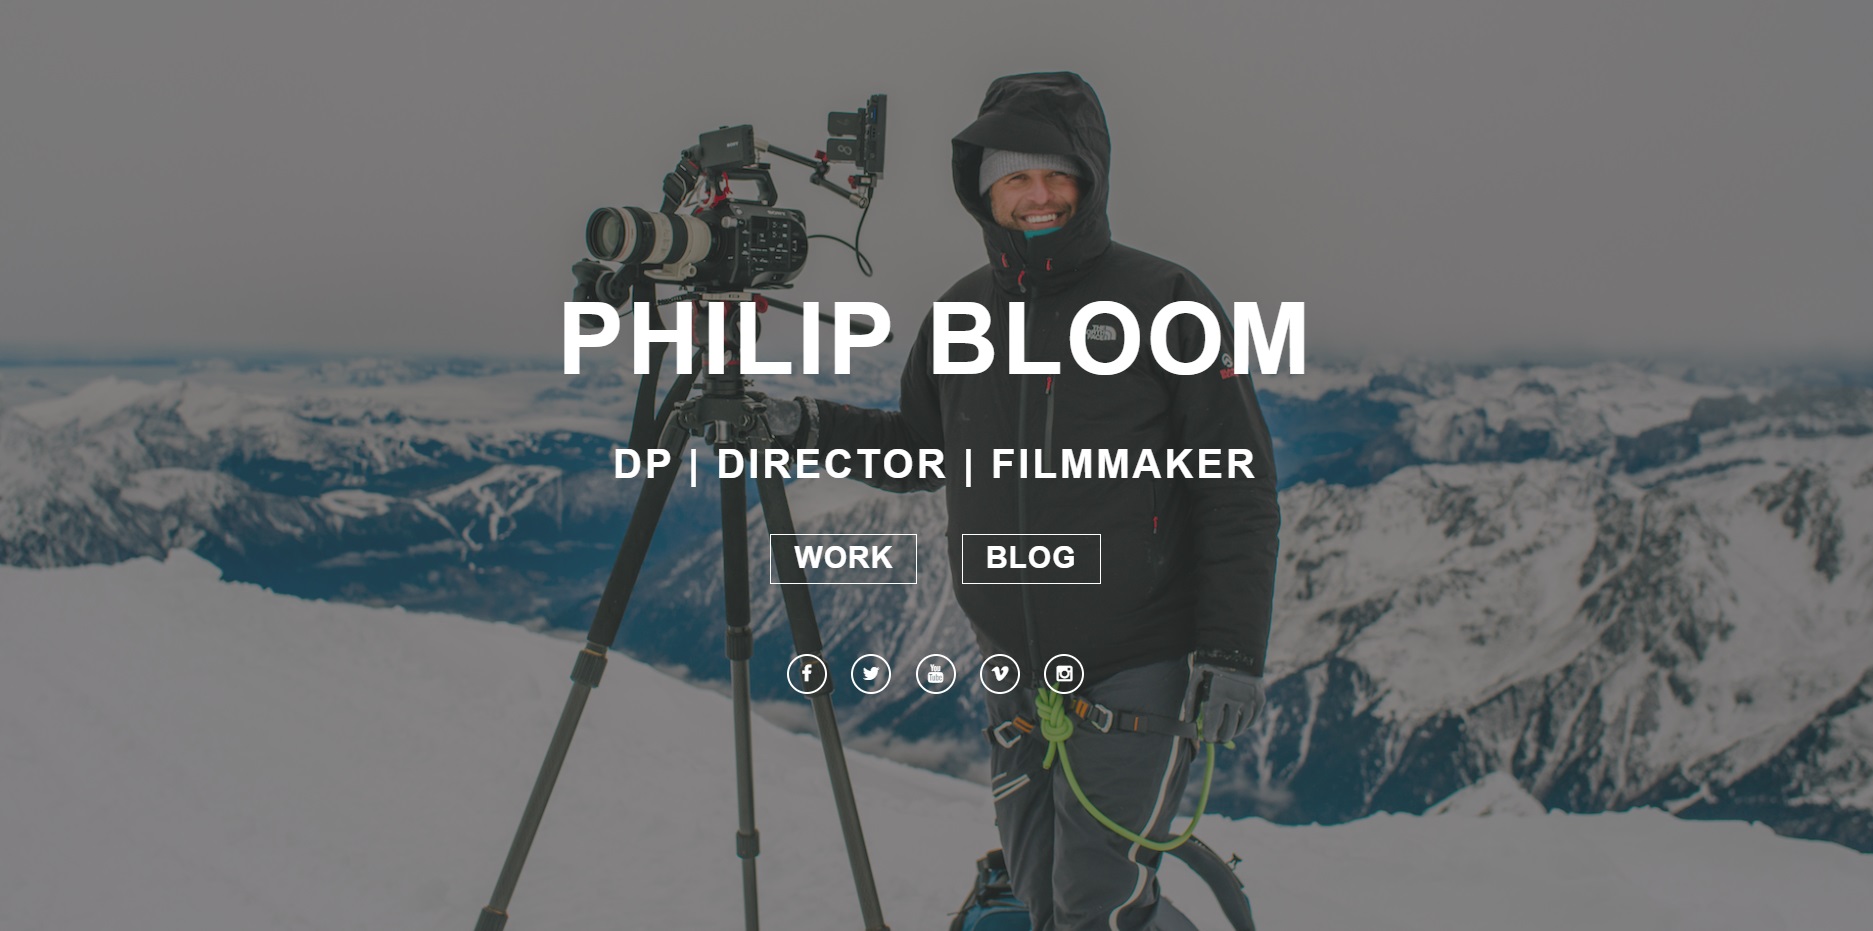 Philip Bloom video portfolio website